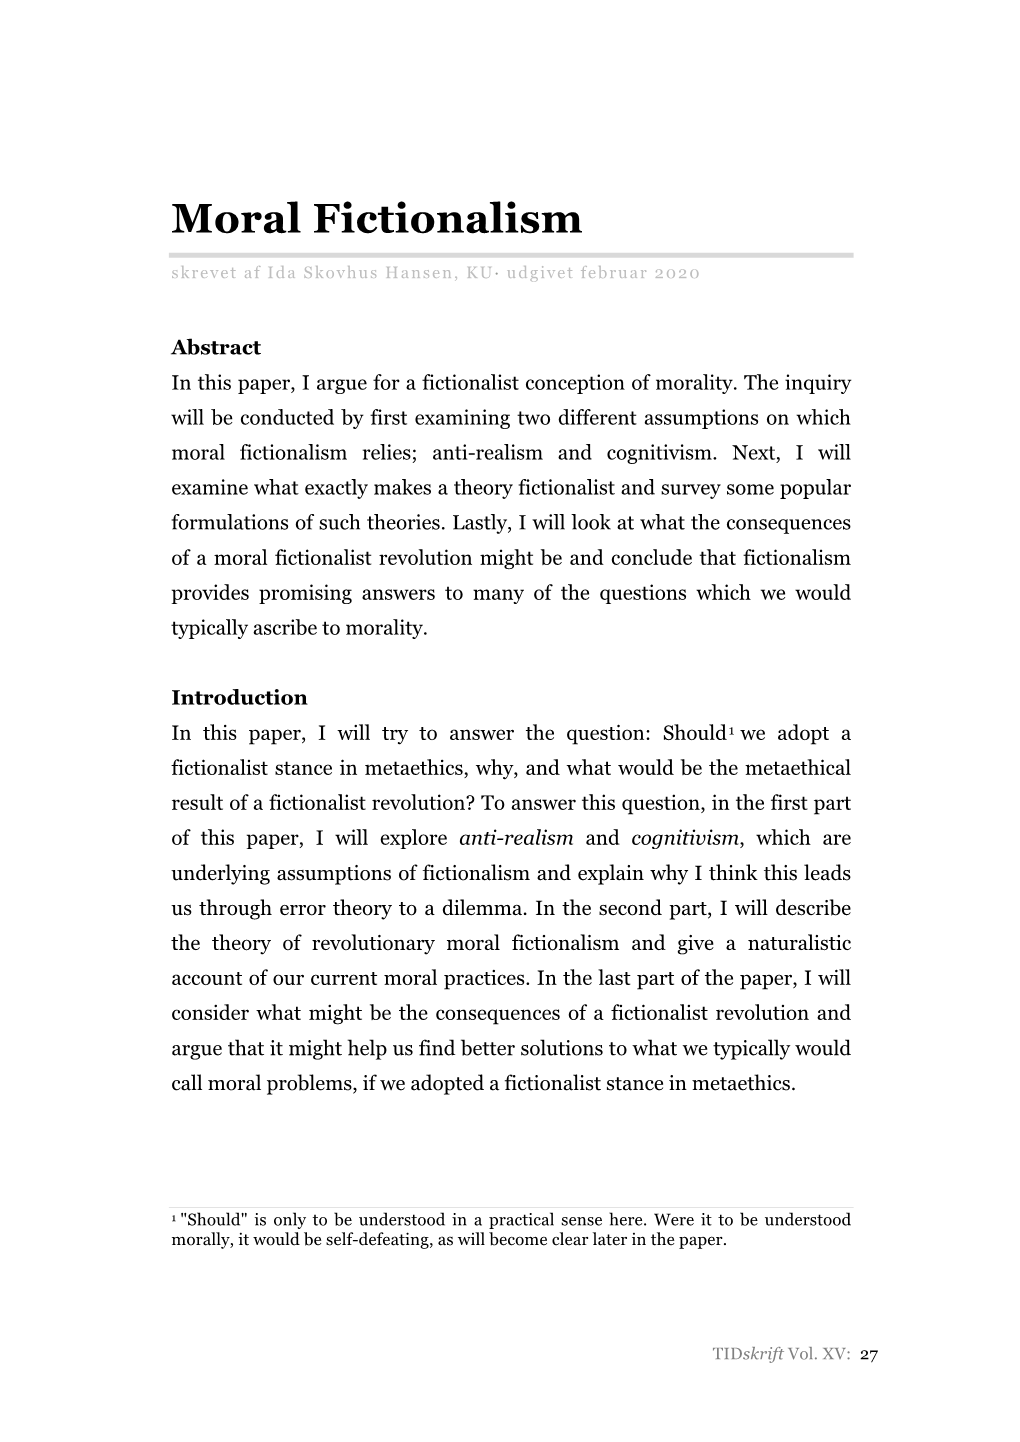 Moral Fictionalism Skrevet Af Ida Skovhus Hansen, KU· Udgivet Februar 2020